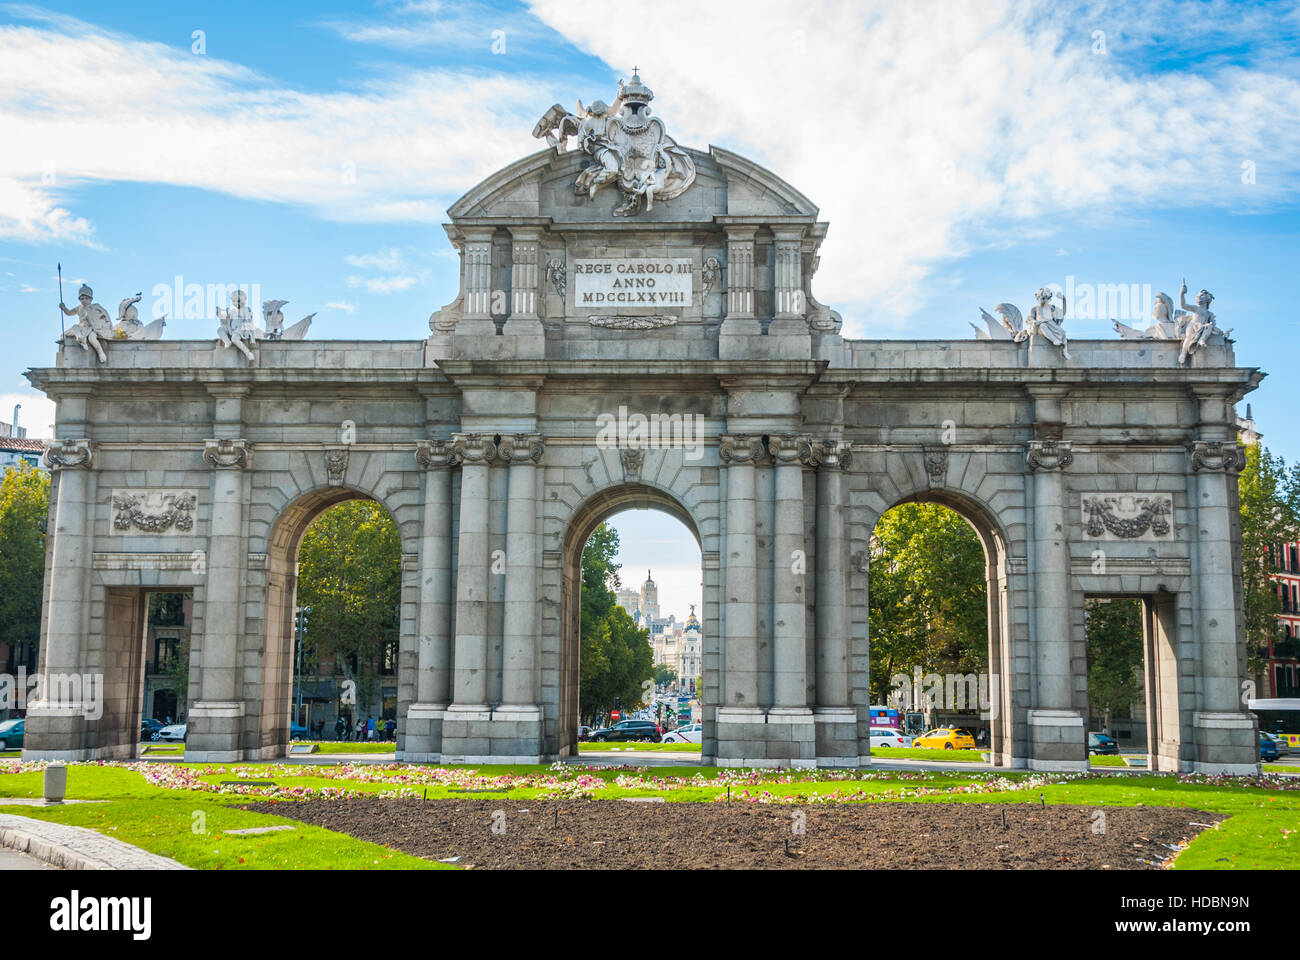 Puerta antigua de piedra una vez utilizado para acoger a los nobles y los reyes a la ciudad de Madrid. Foto de stock